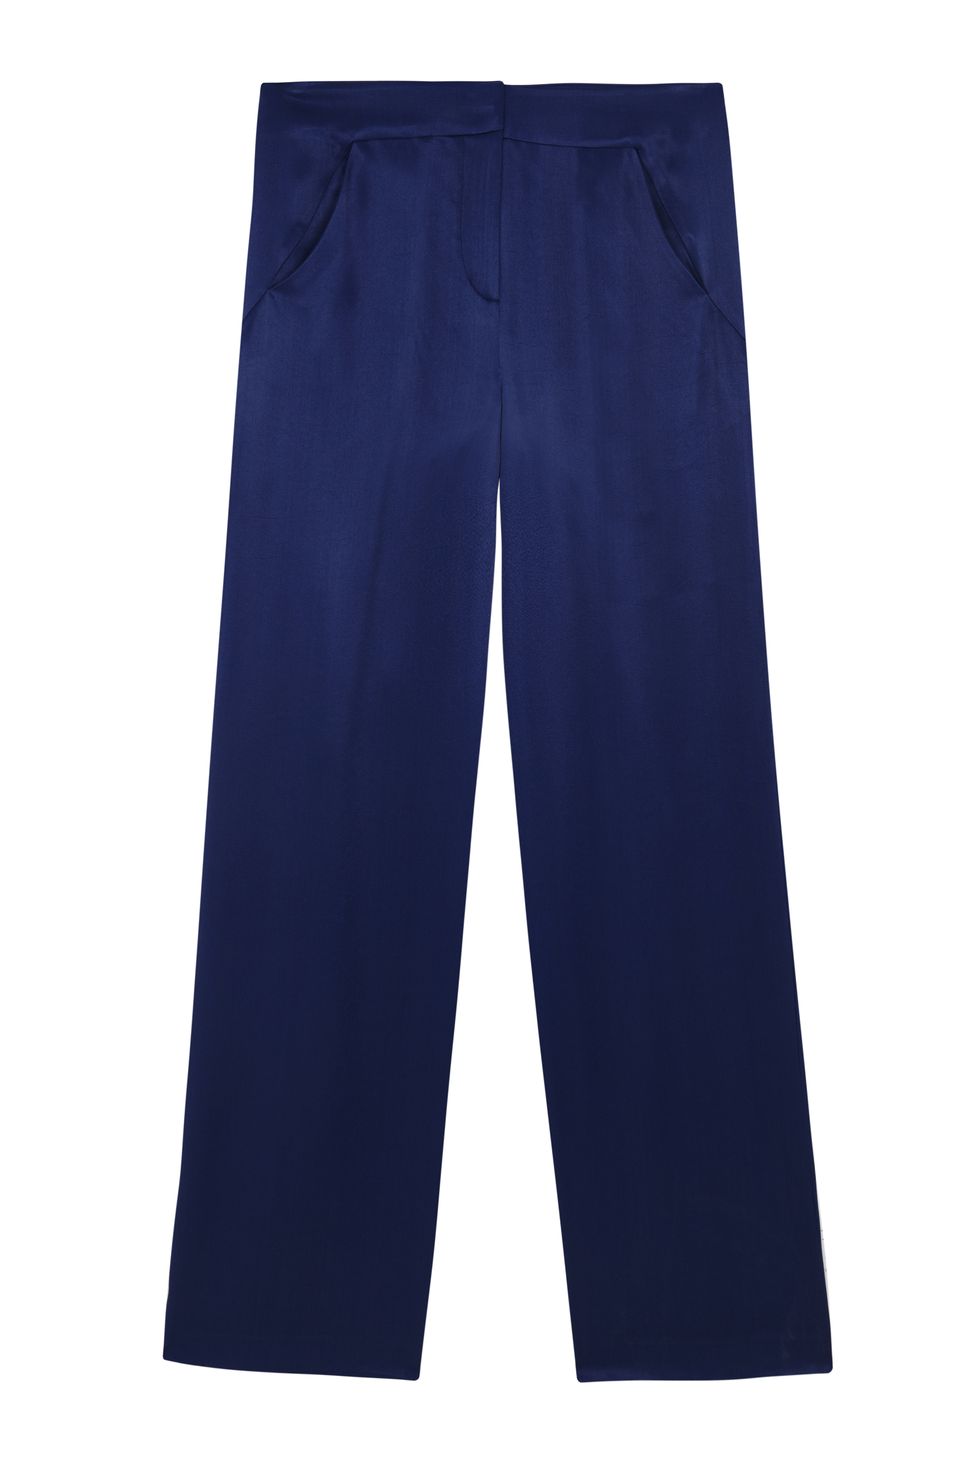 Moda navy estate 2017 con io pantaloni blu di Intropia